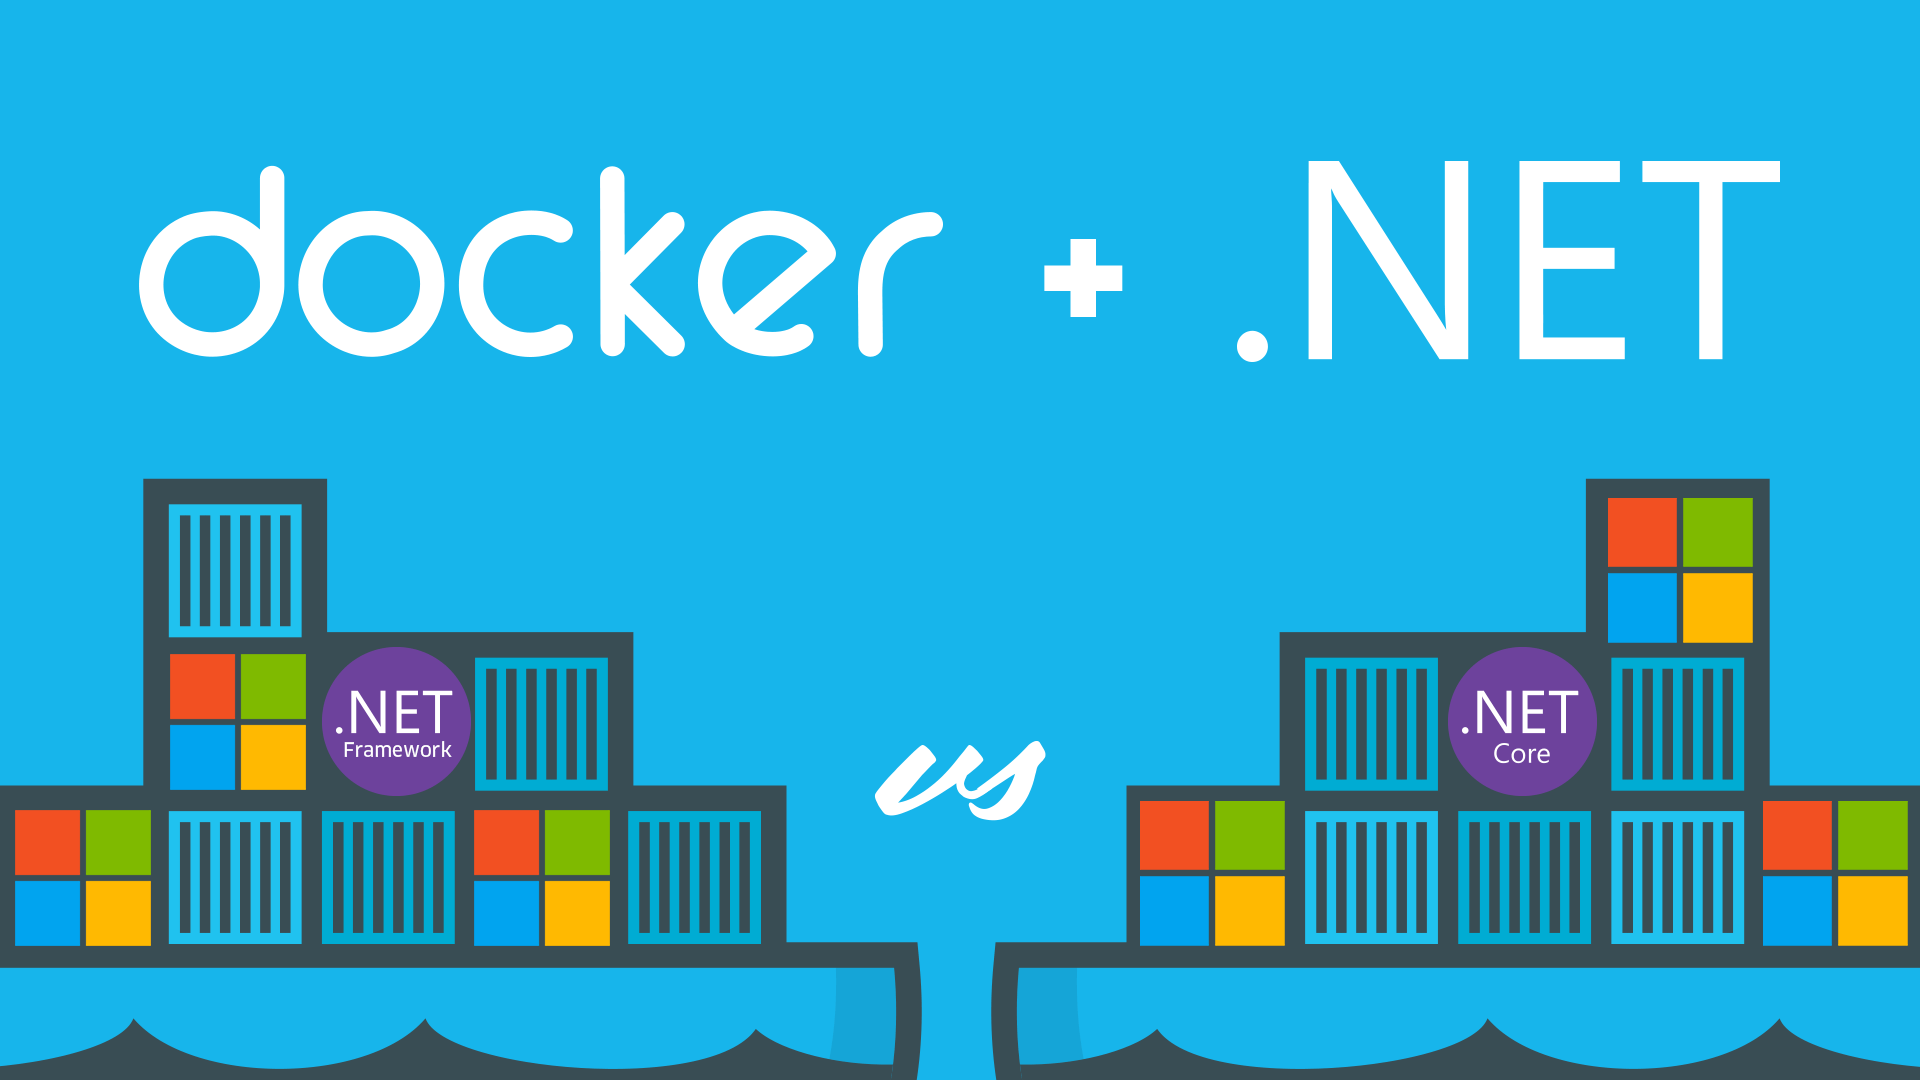 .NET Core vs .NET Framework for Docker Containers